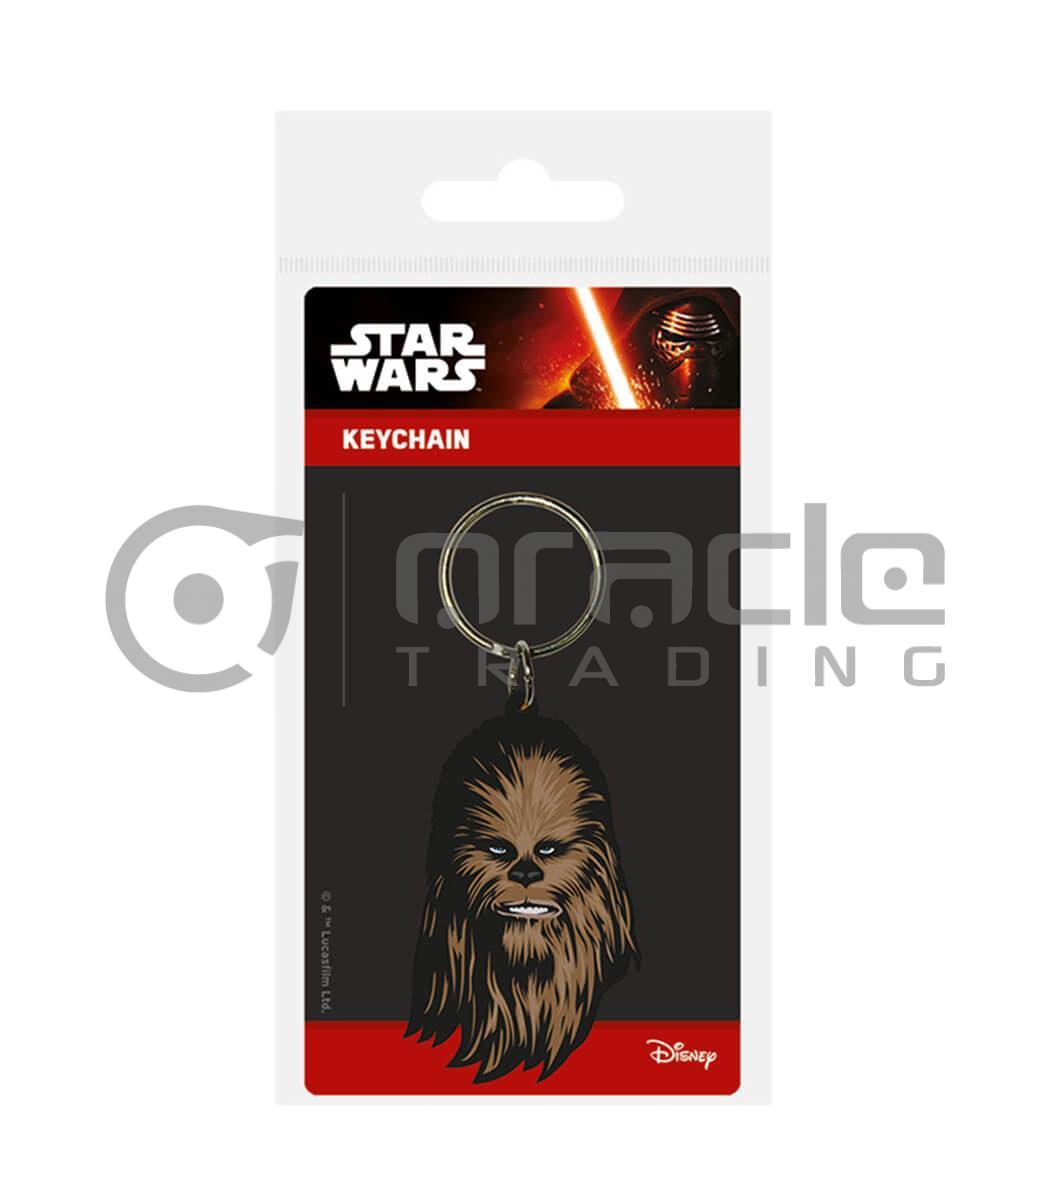 Star Wars Keychain (Chewbacca)